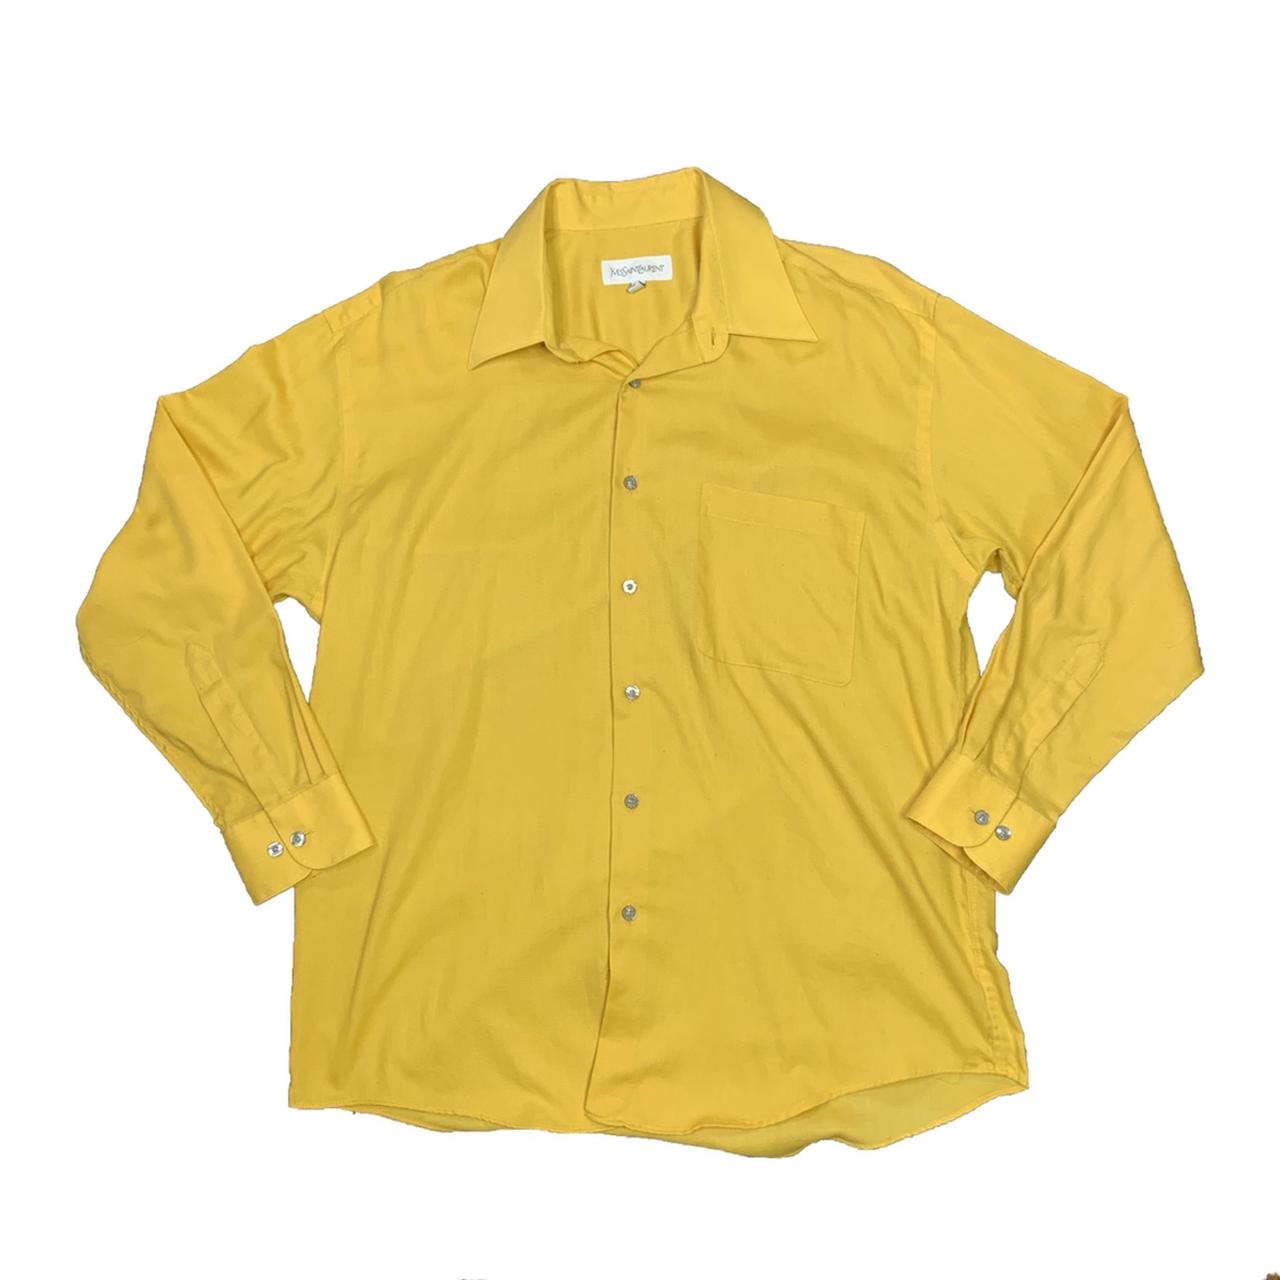 Vintage Yves Saint Laurent shirt. Great condition... - Depop